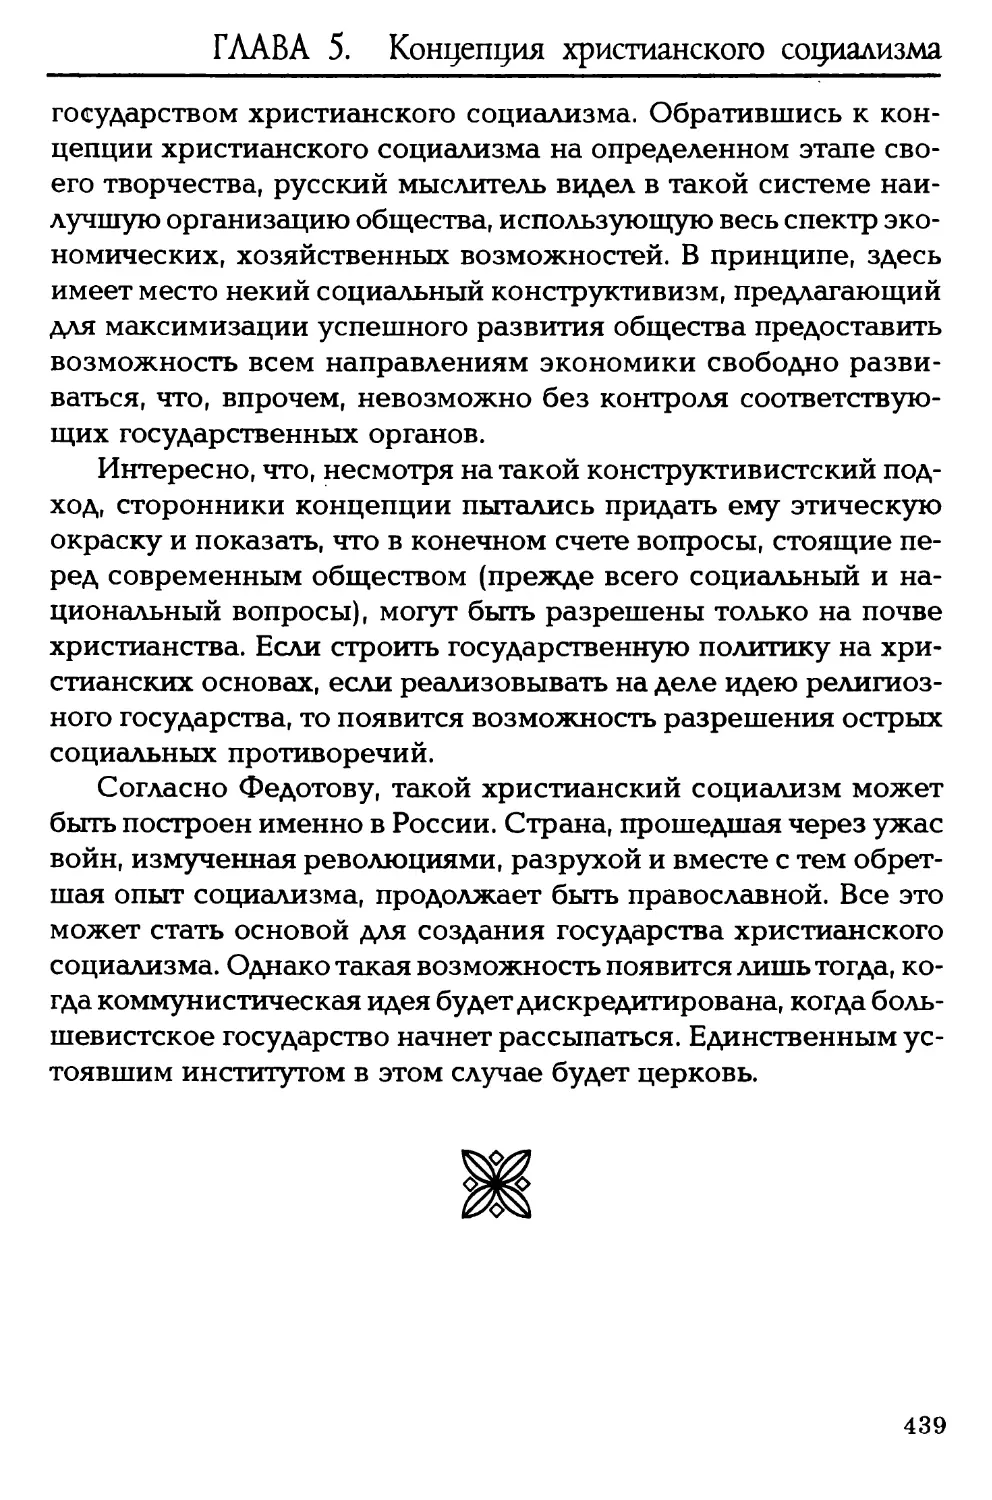 ГЛАВА 5. Георгий Федотов: концепция христианского социализма